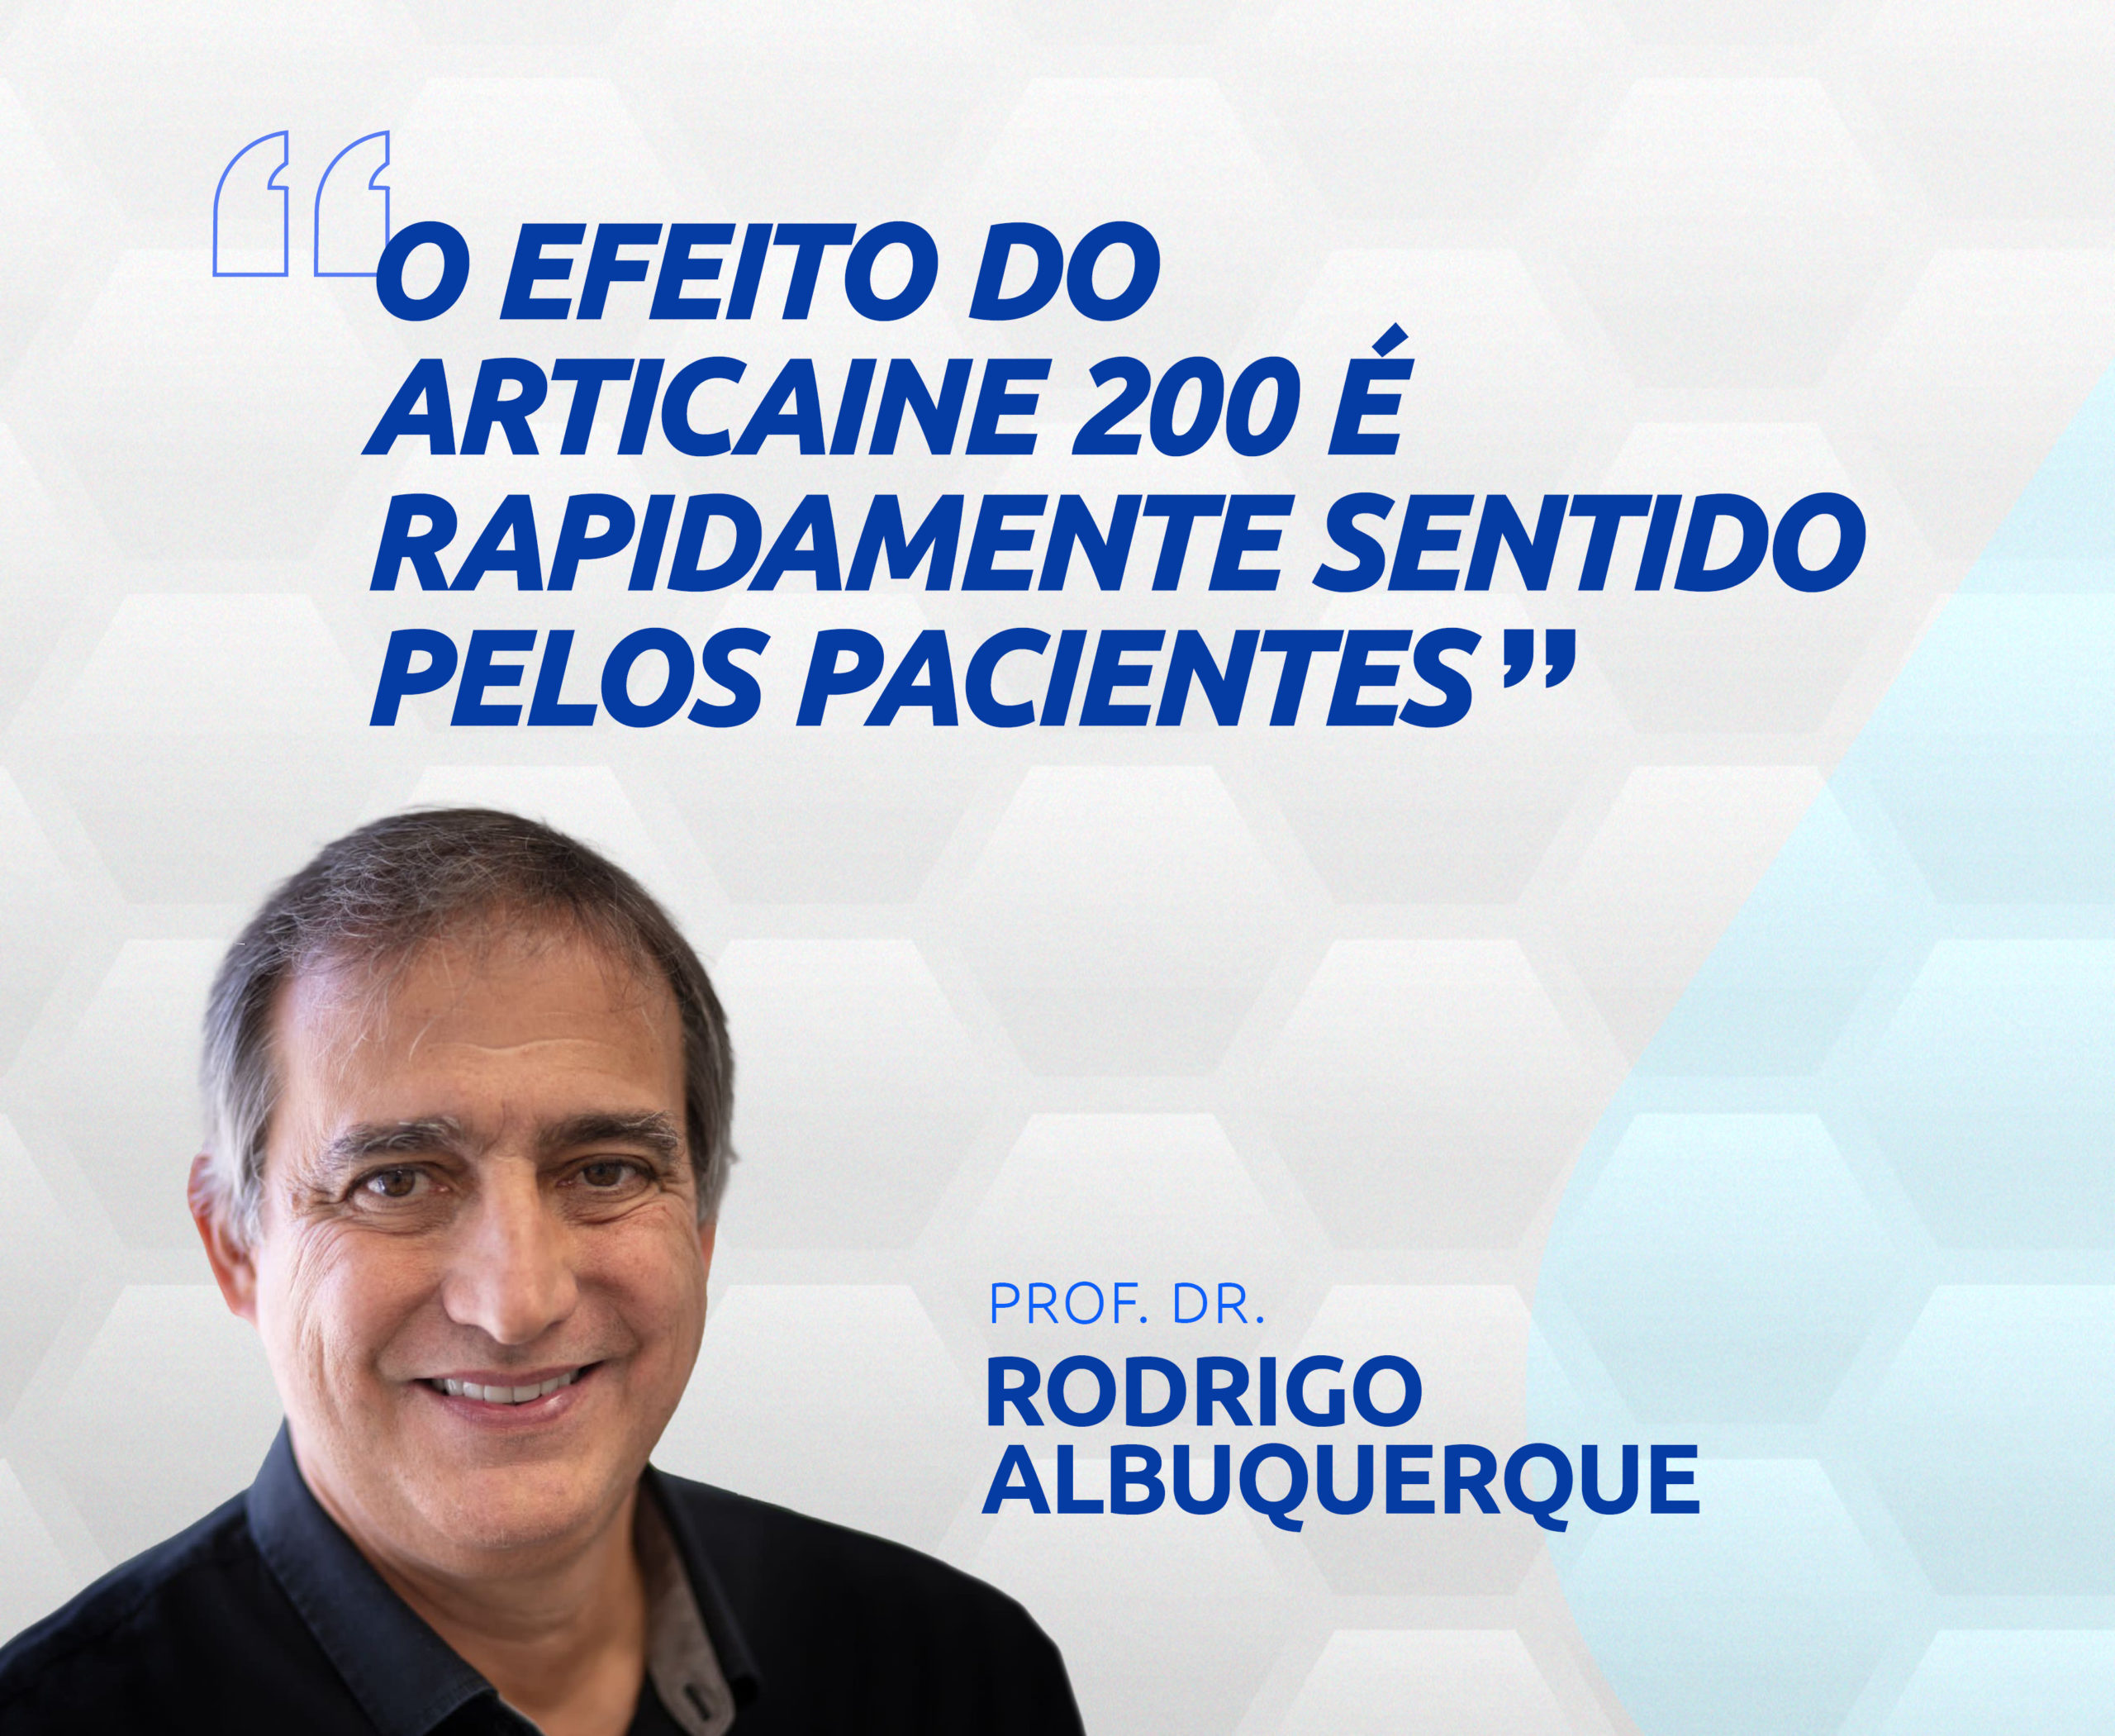 DEPOIMENTO PROF. DR. RODRIGO ALBUQUERQUE